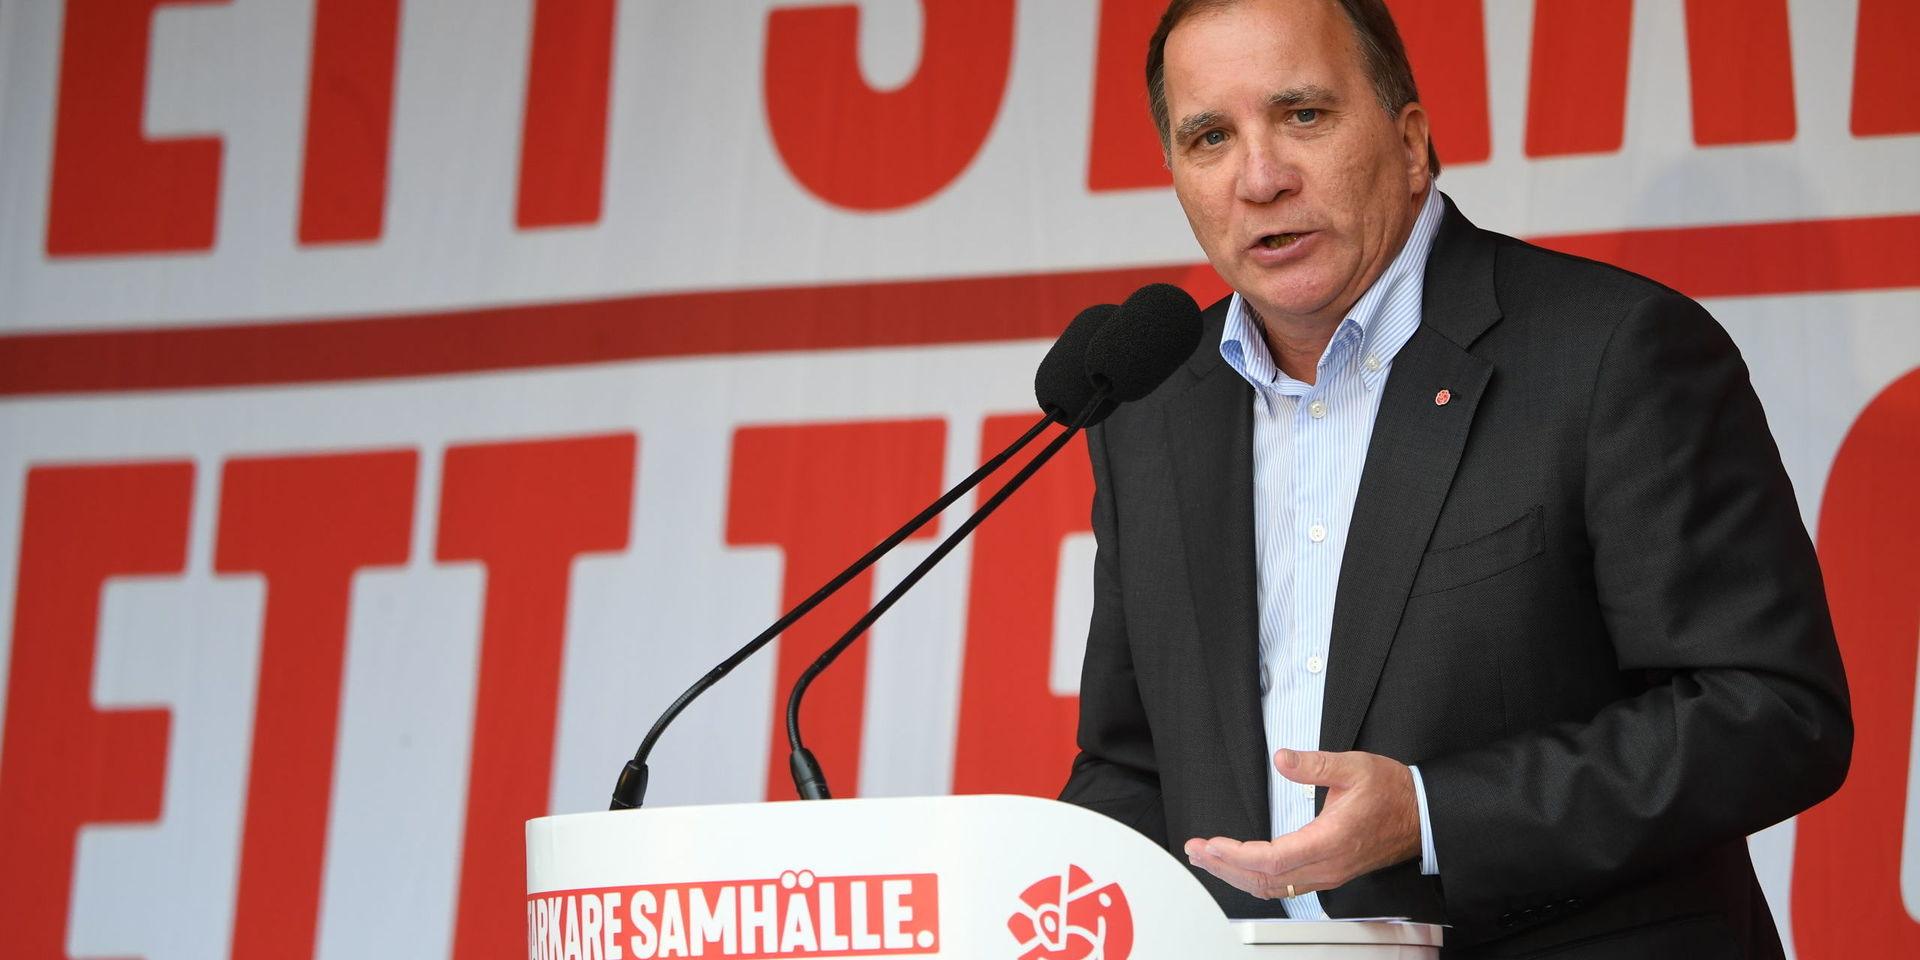 Kommunkrisen. Statsminister Stefan Löfven försöker bevisa att Socialdemokraterna fortfarande kan vara relevanta för väljare på landsbygden och i traditionella industriorter.